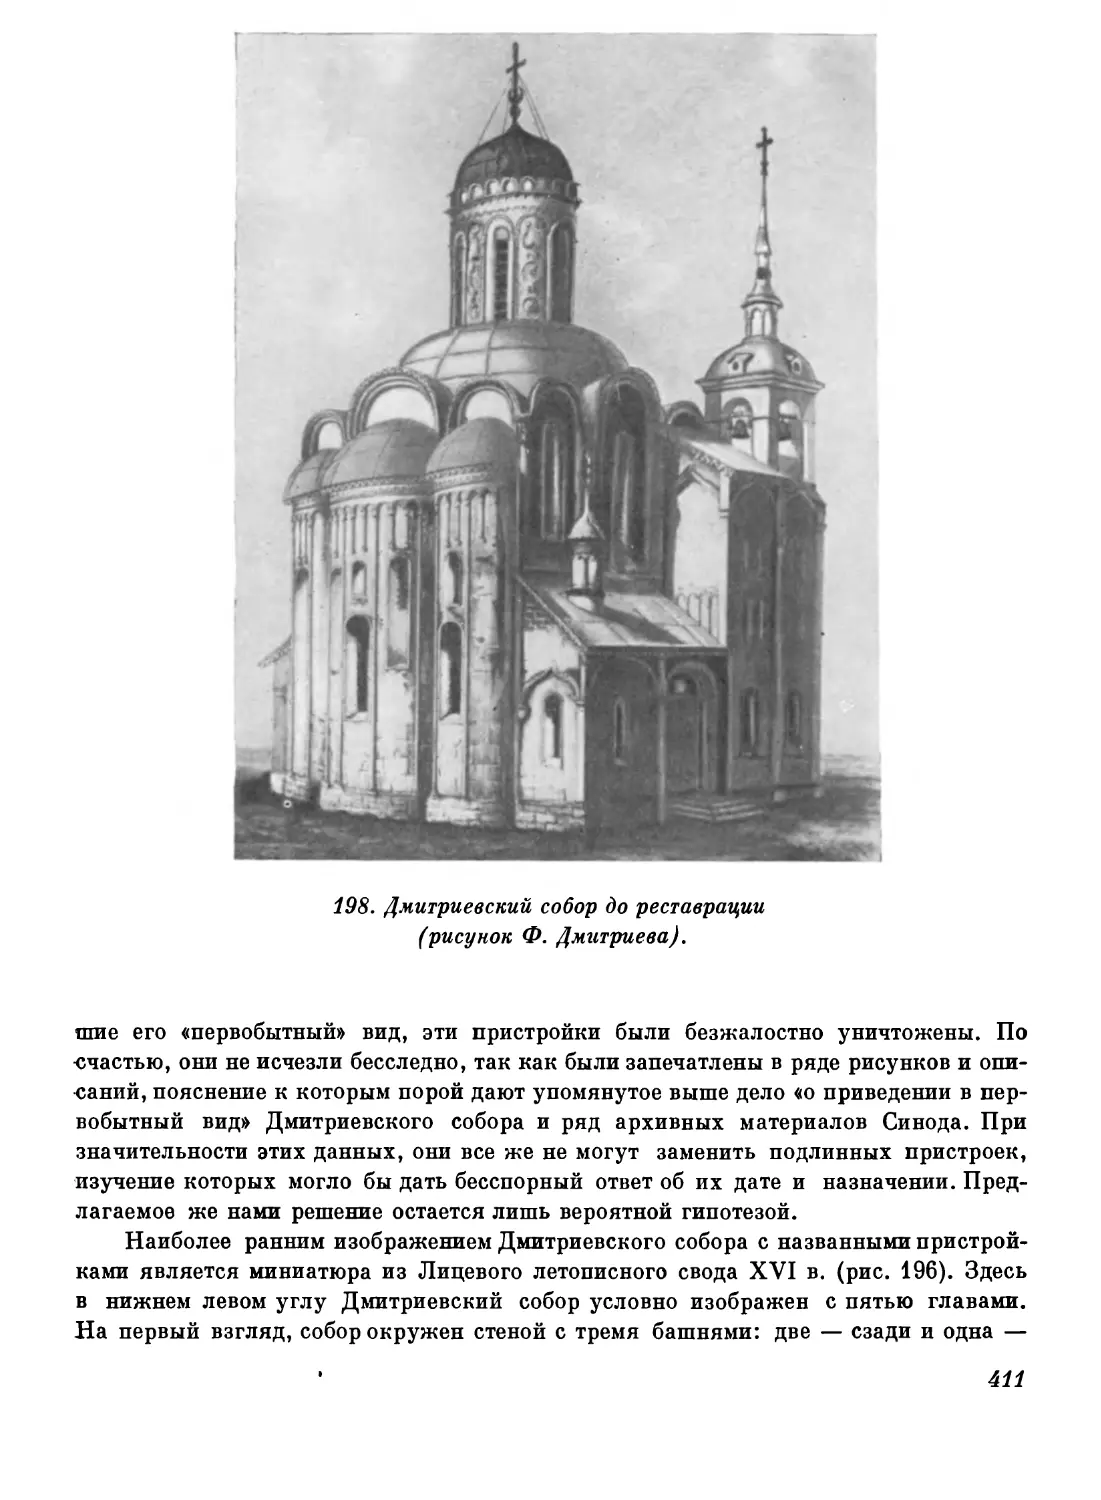 Дмитриевский собор во Владимире 1197